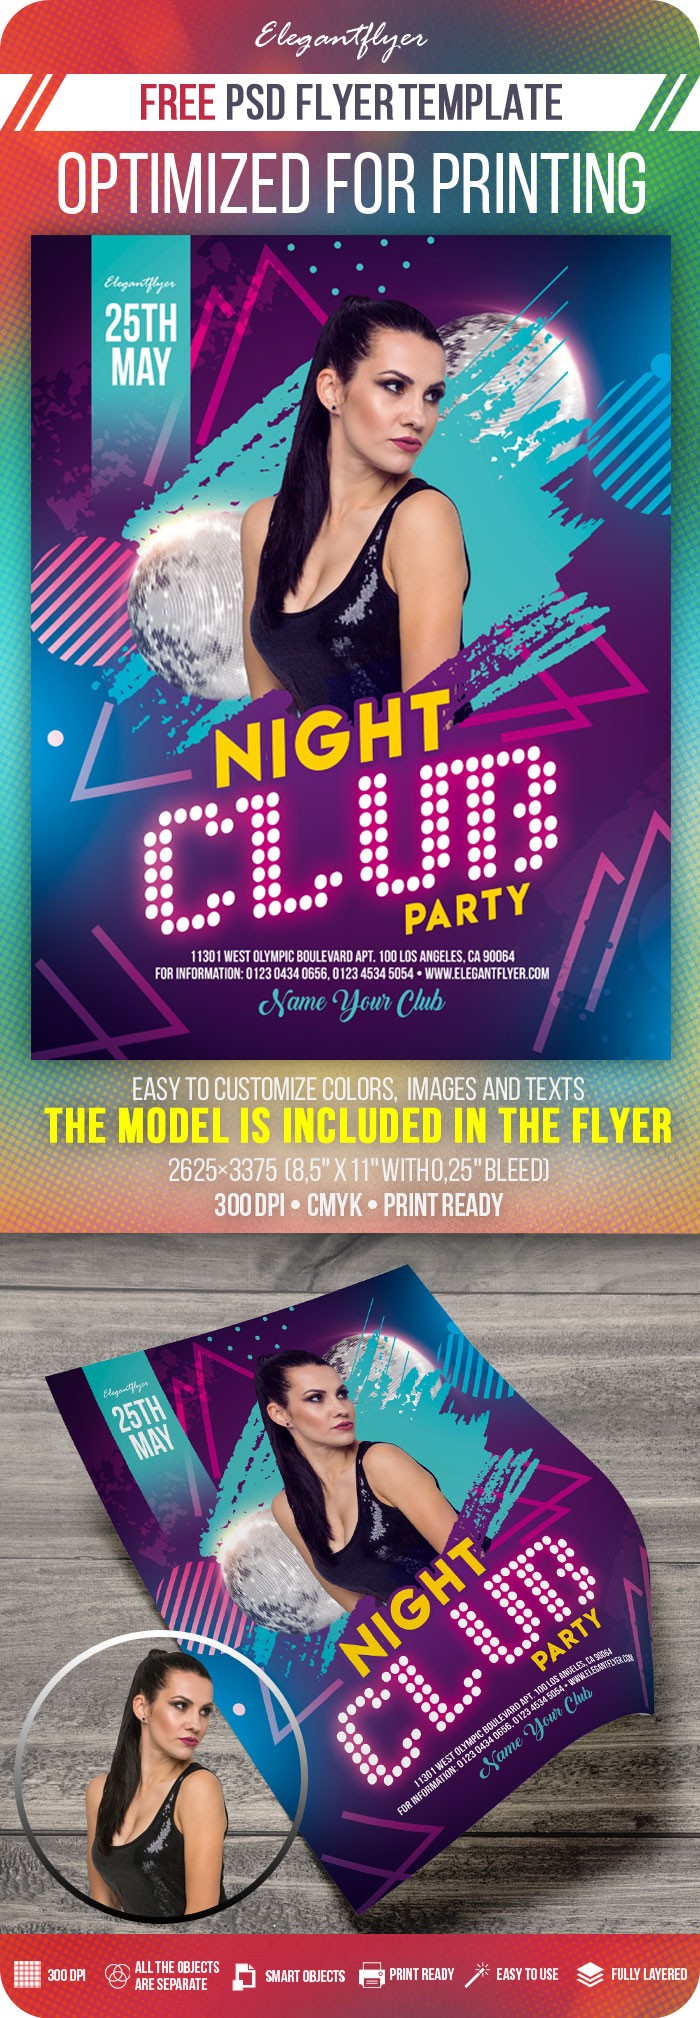 Impreza w klubie nocnym by ElegantFlyer